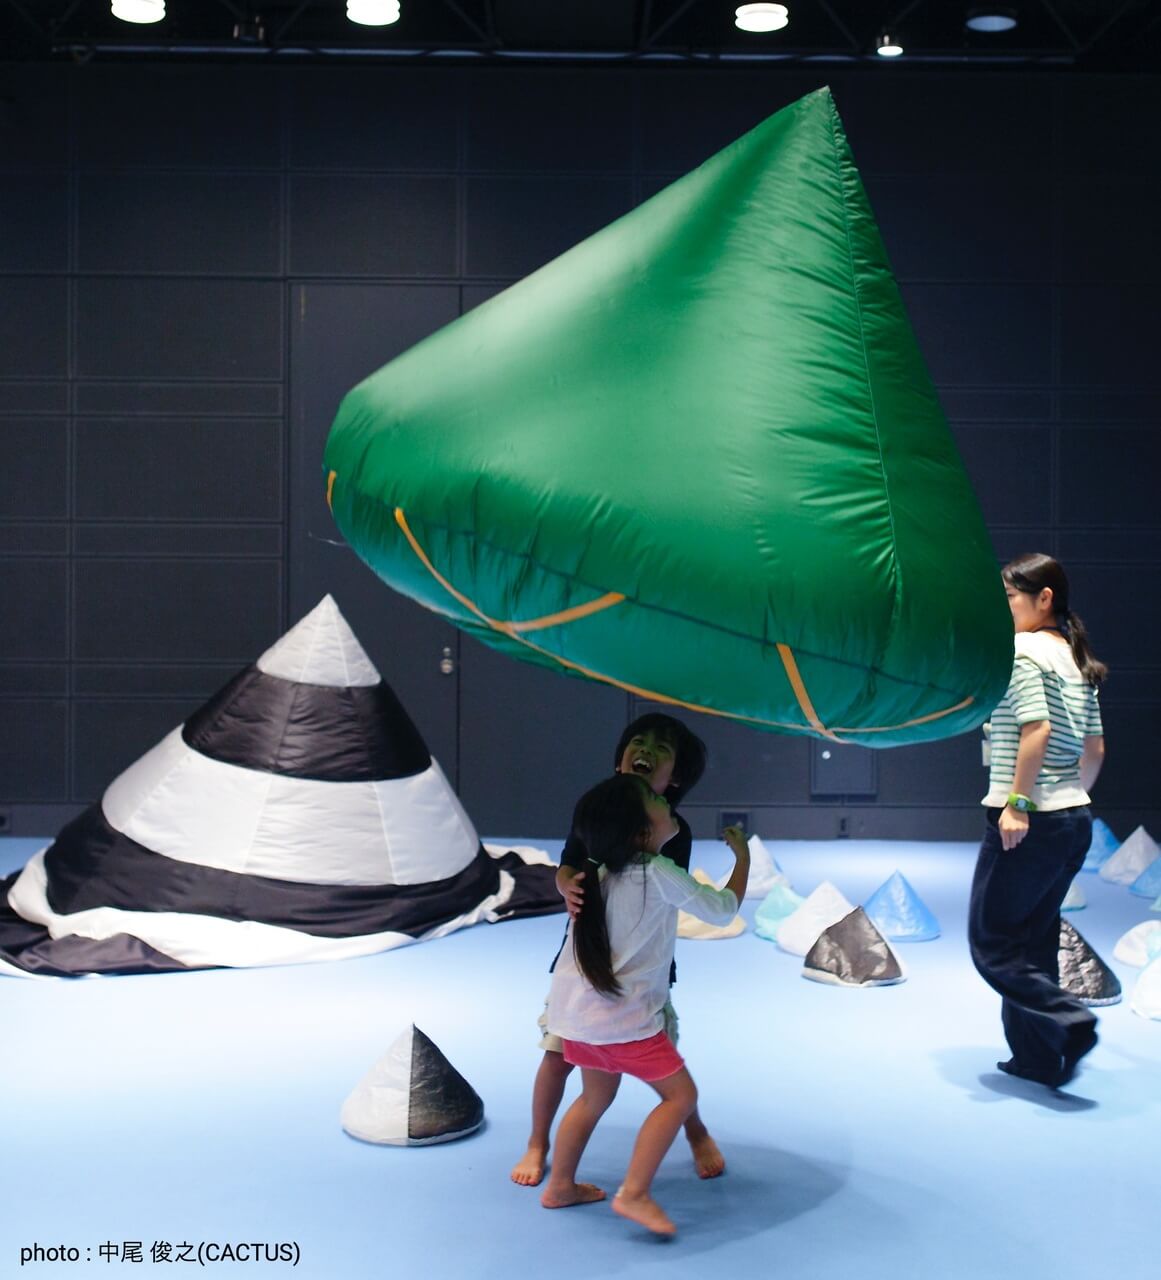 空気を孕むと円錐形に膨らむ布の作品です。遊べる作品を使ったイベントを美術館などで開催しています。